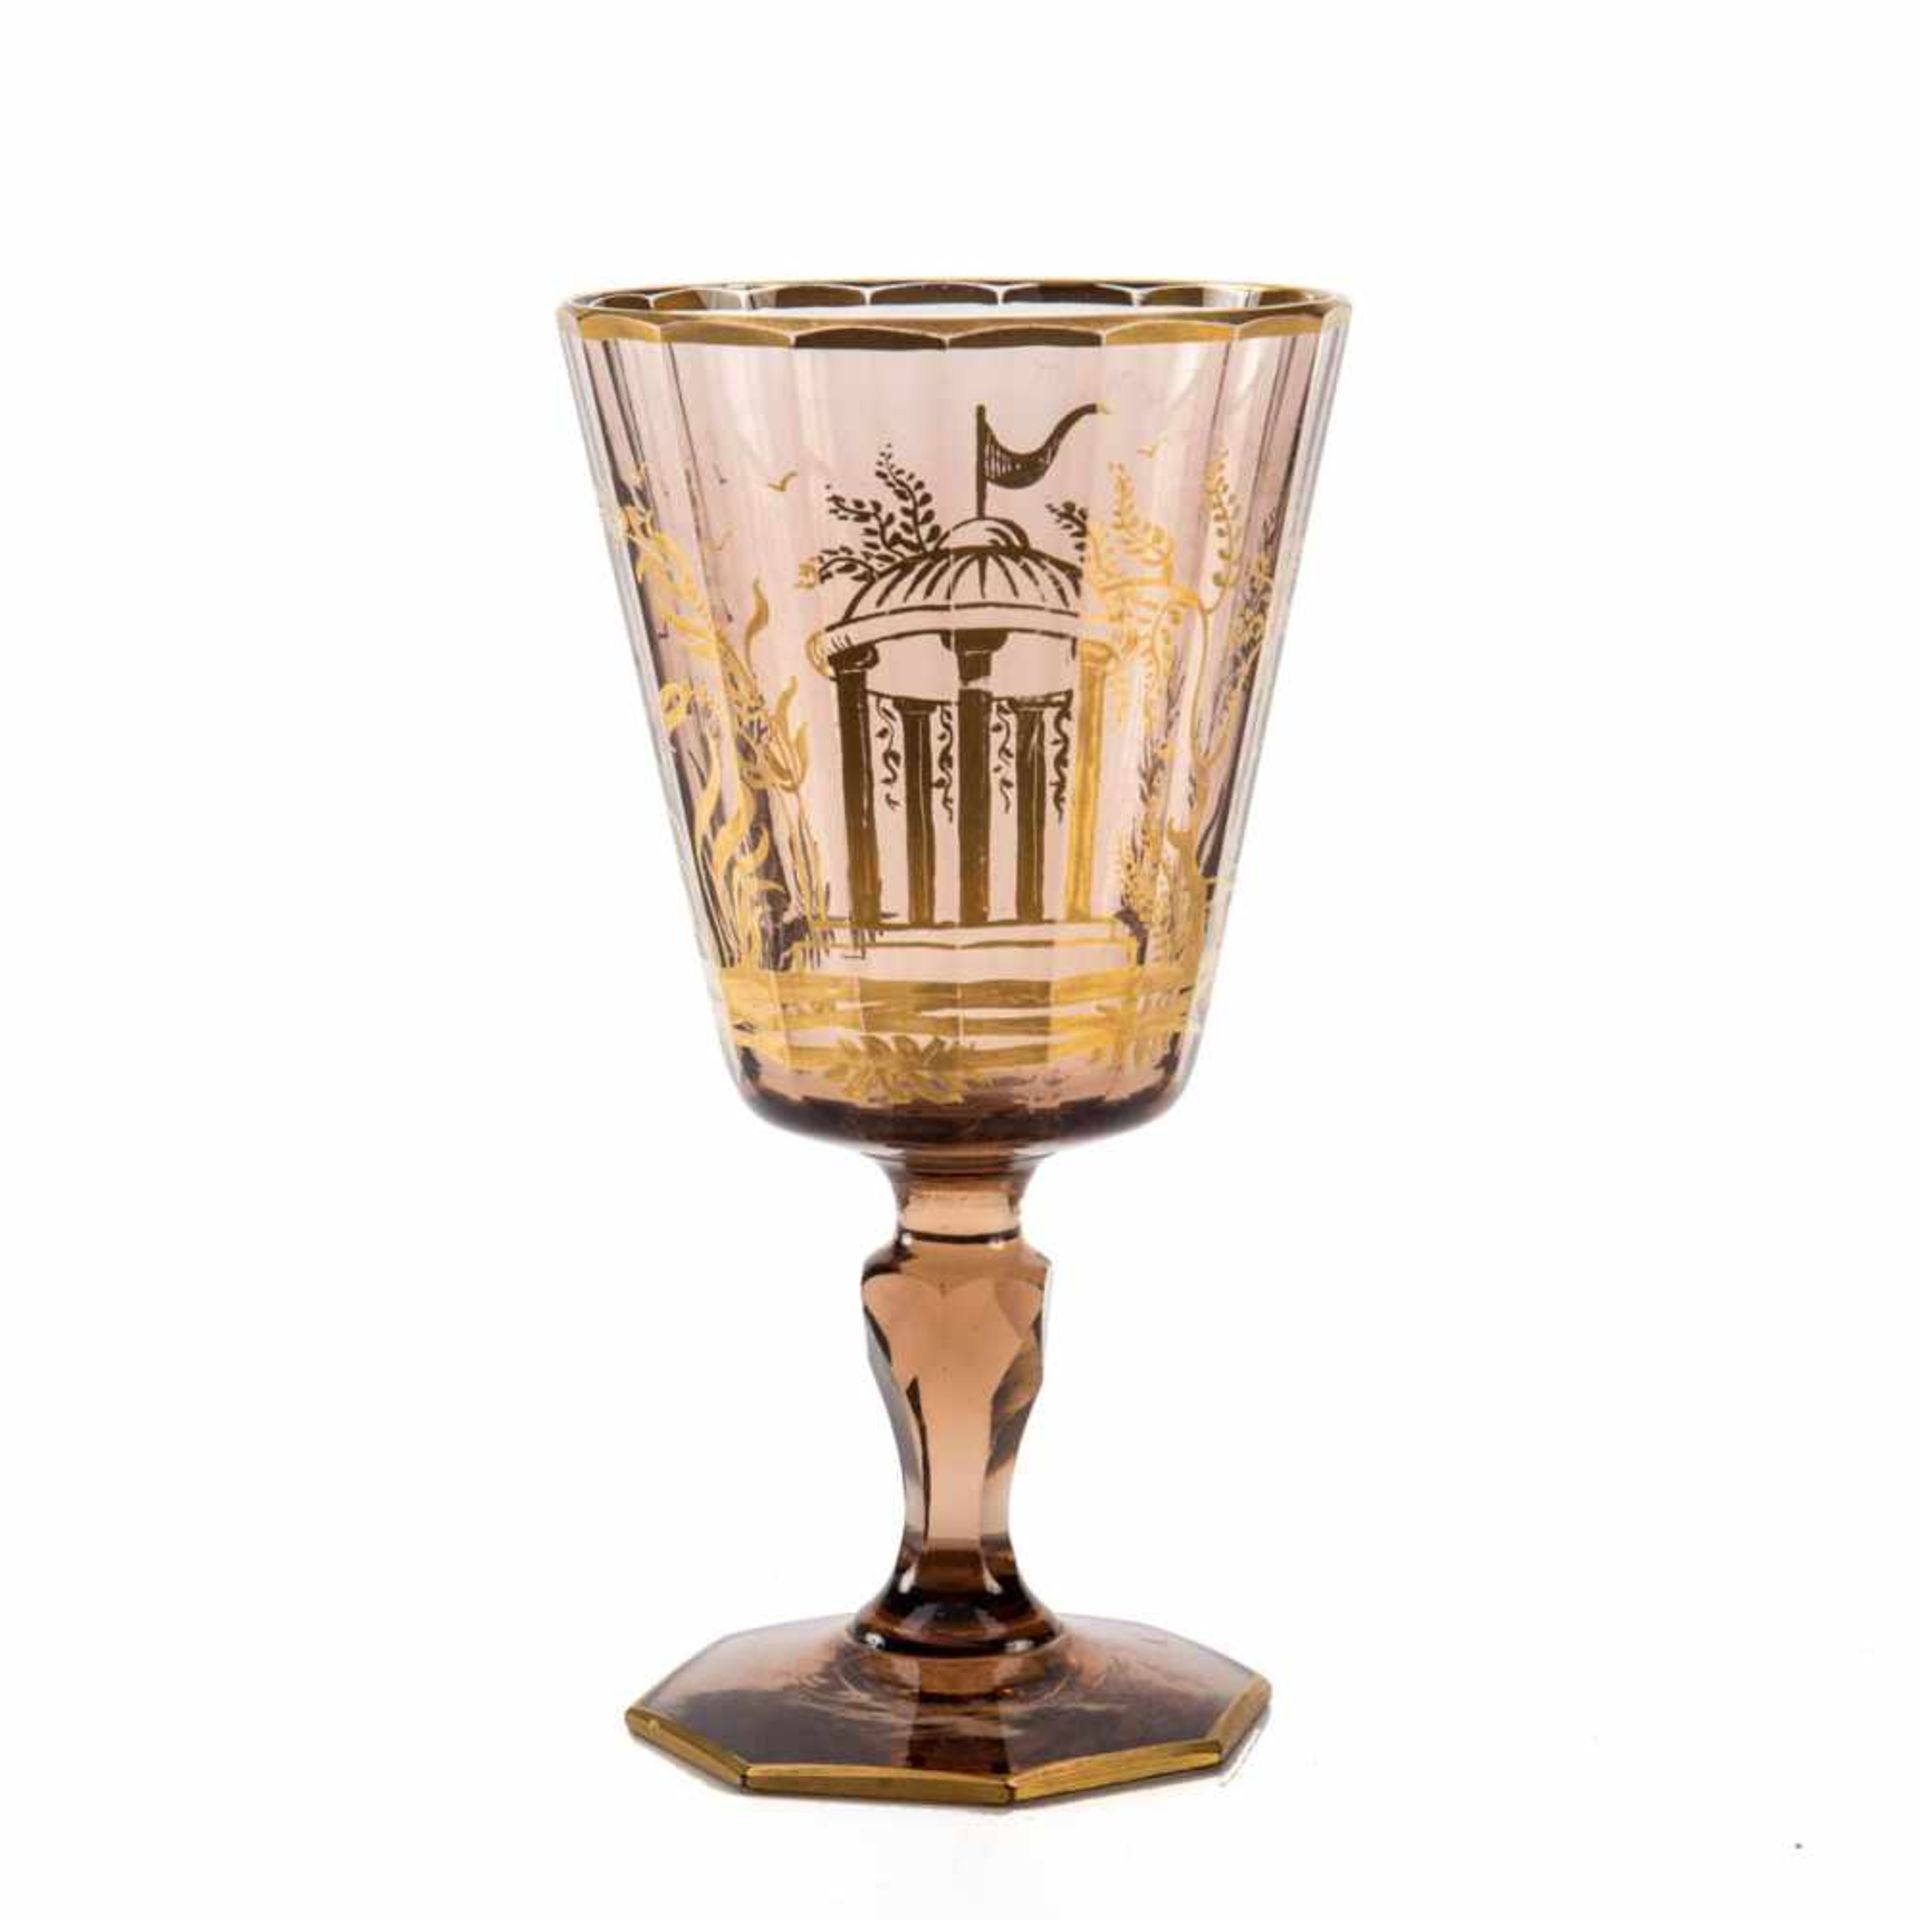 Kelchglas, Böhmen um 1900 Bräunliches Glas. Oktogonaler Fuß, facettierter Schaft, konische